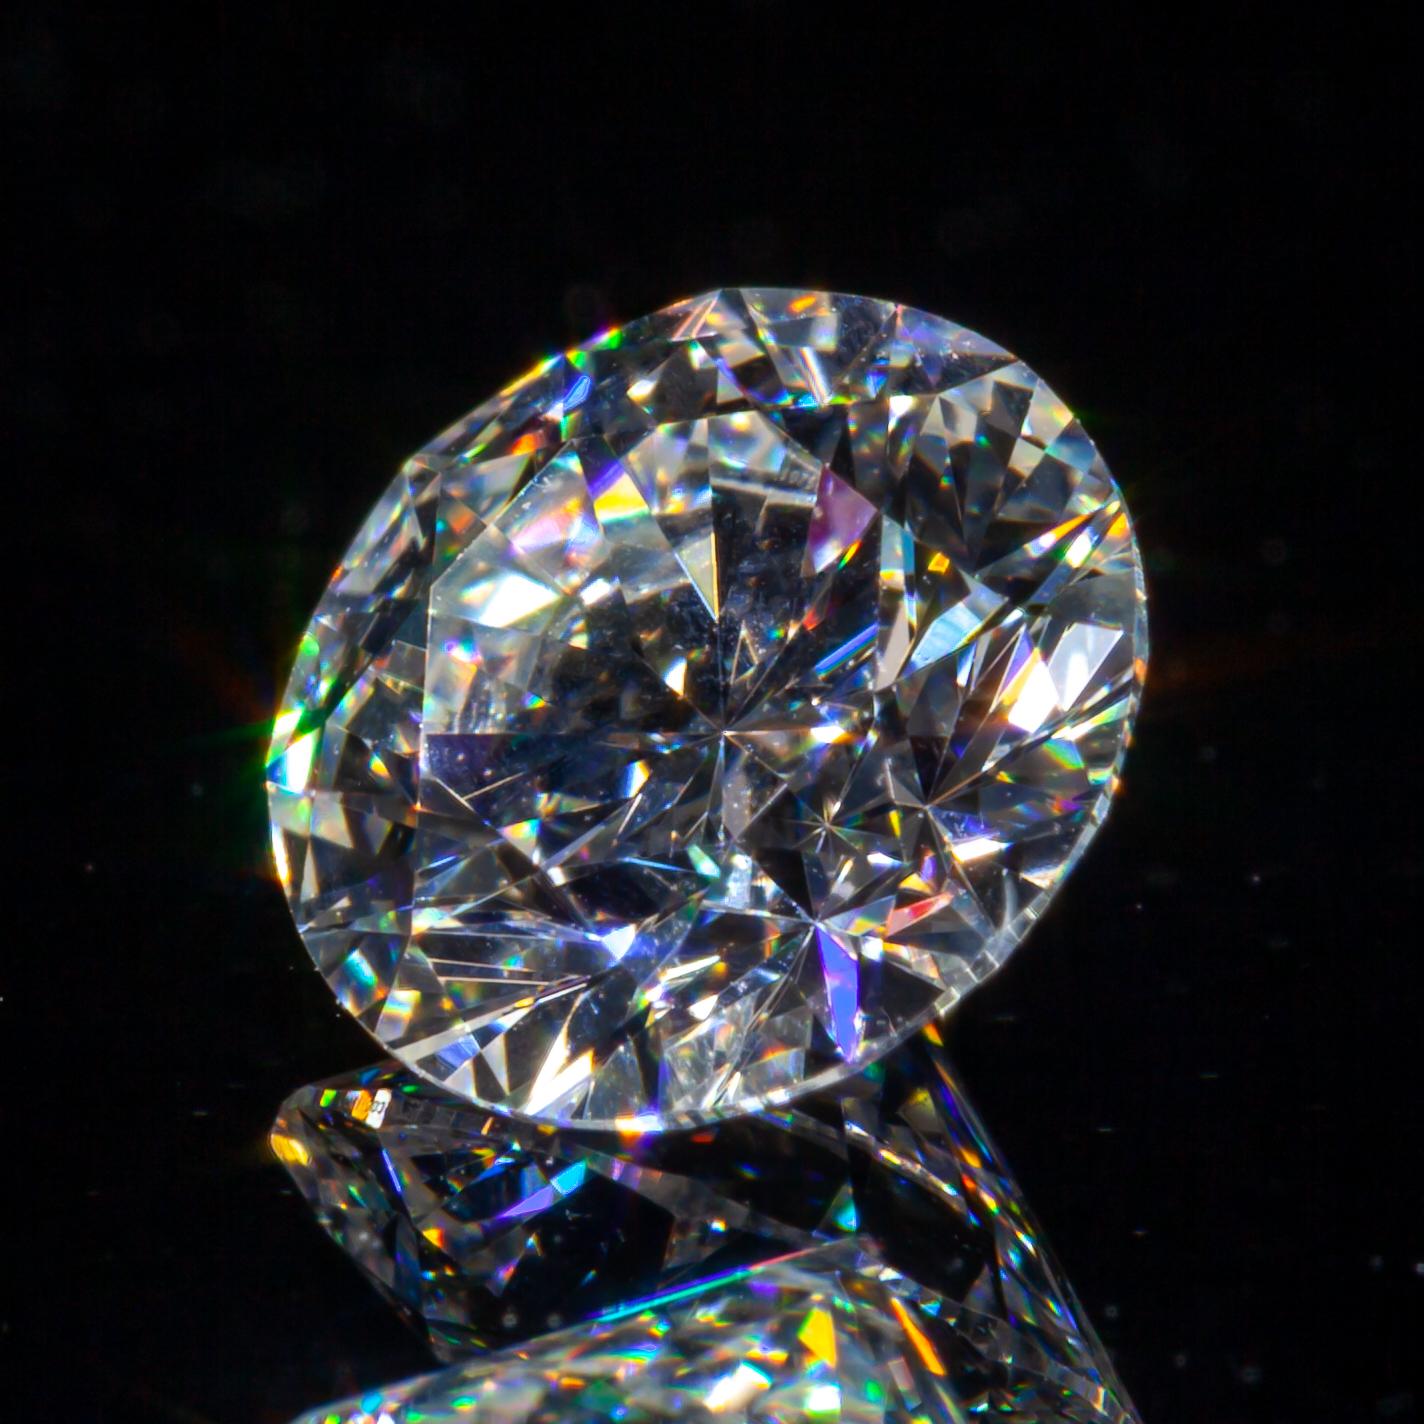 0,70 Karat Loser E / VS2 runder Diamant im Brillantschliff GIA zertifiziert

Diamant Allgemeine Informationen
GIA-Berichtsnummer: 6187452729
Diamant-Schliff: Runder Brillant
Abmessungen: 5.79  x  5.77  -  3.49 mm

Ergebnisse der